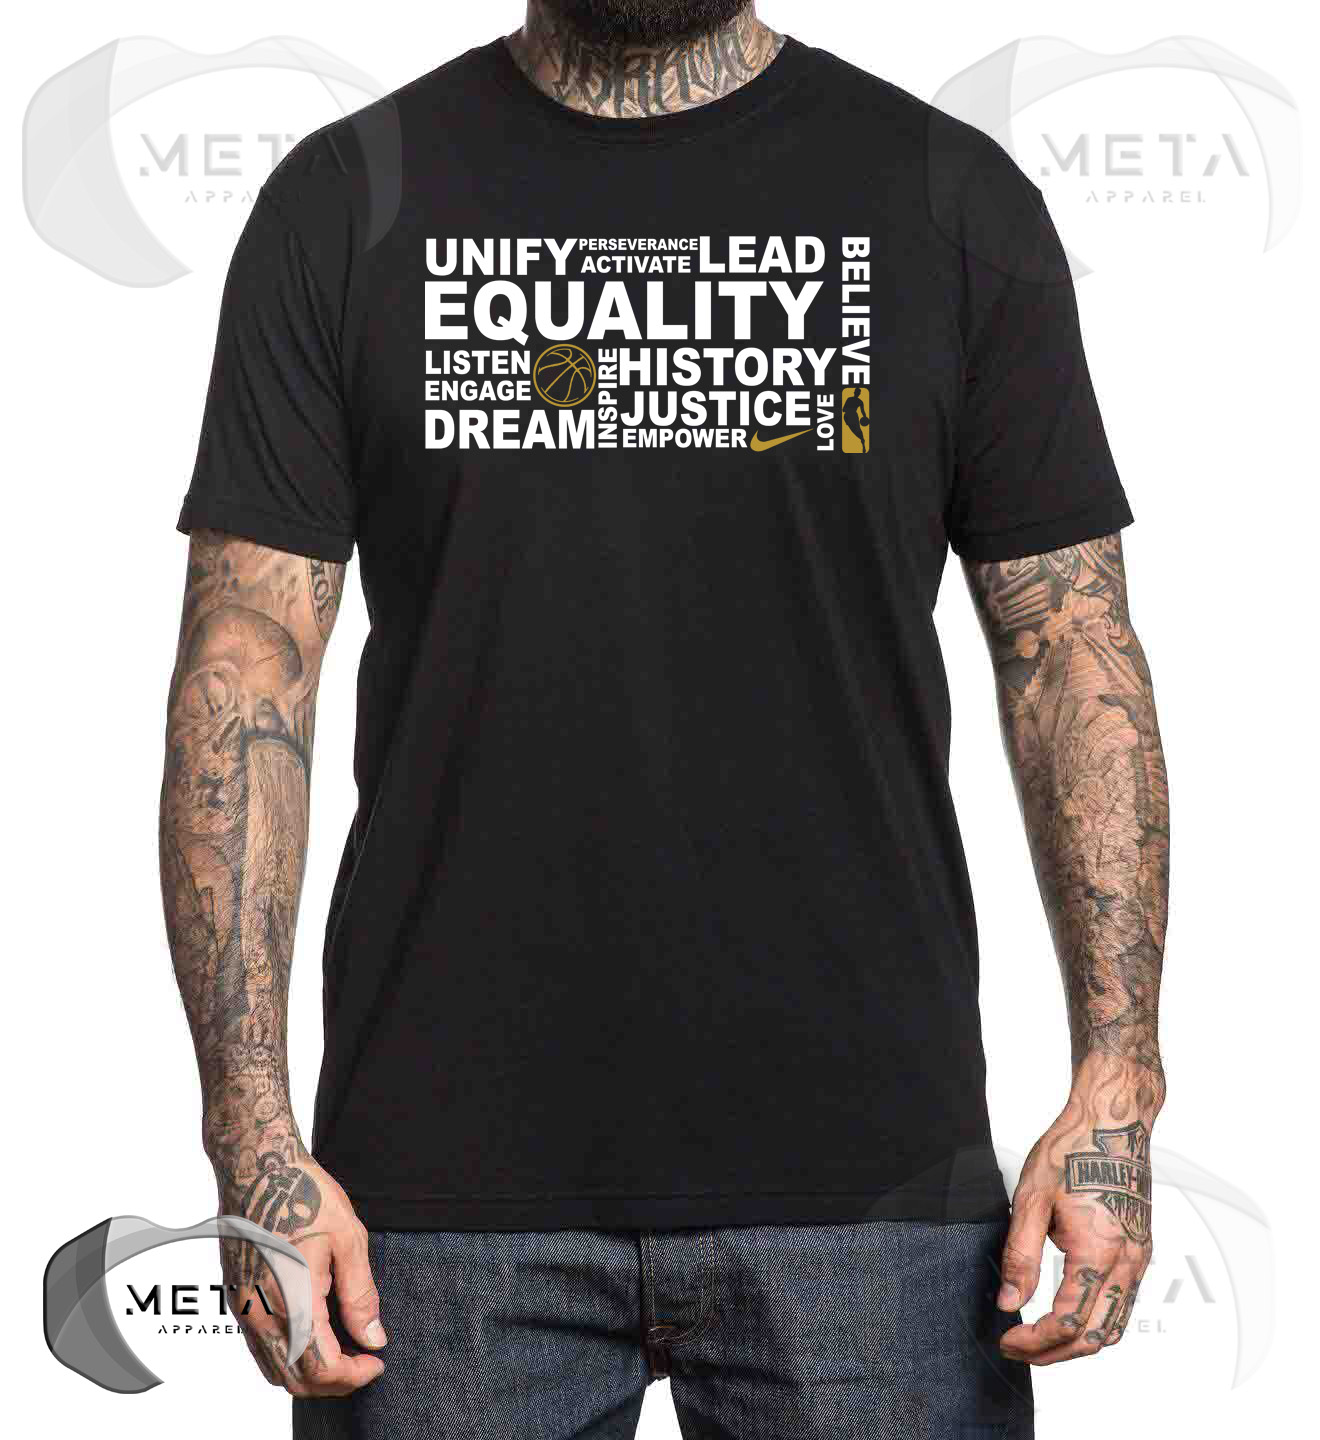 nike equality shirt